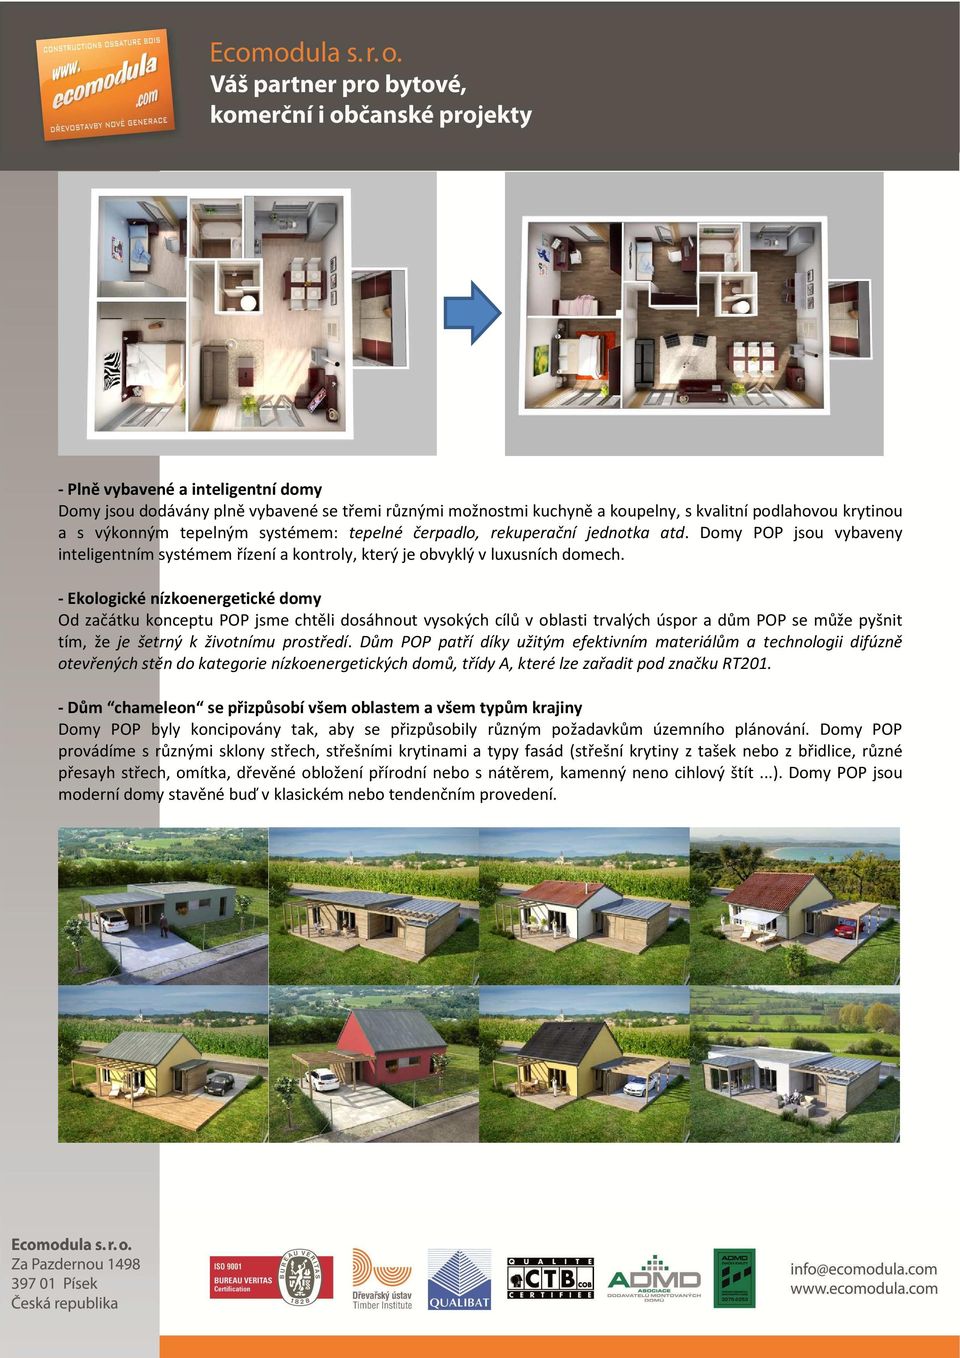 - Ekologické nízkoenergetické domy Od začátku konceptu POP jsme chtěli dosáhnout vysokých cílů v oblasti trvalých úspor a dům POP se může pyšnit tím, že je šetrný k životnímu prostředí.